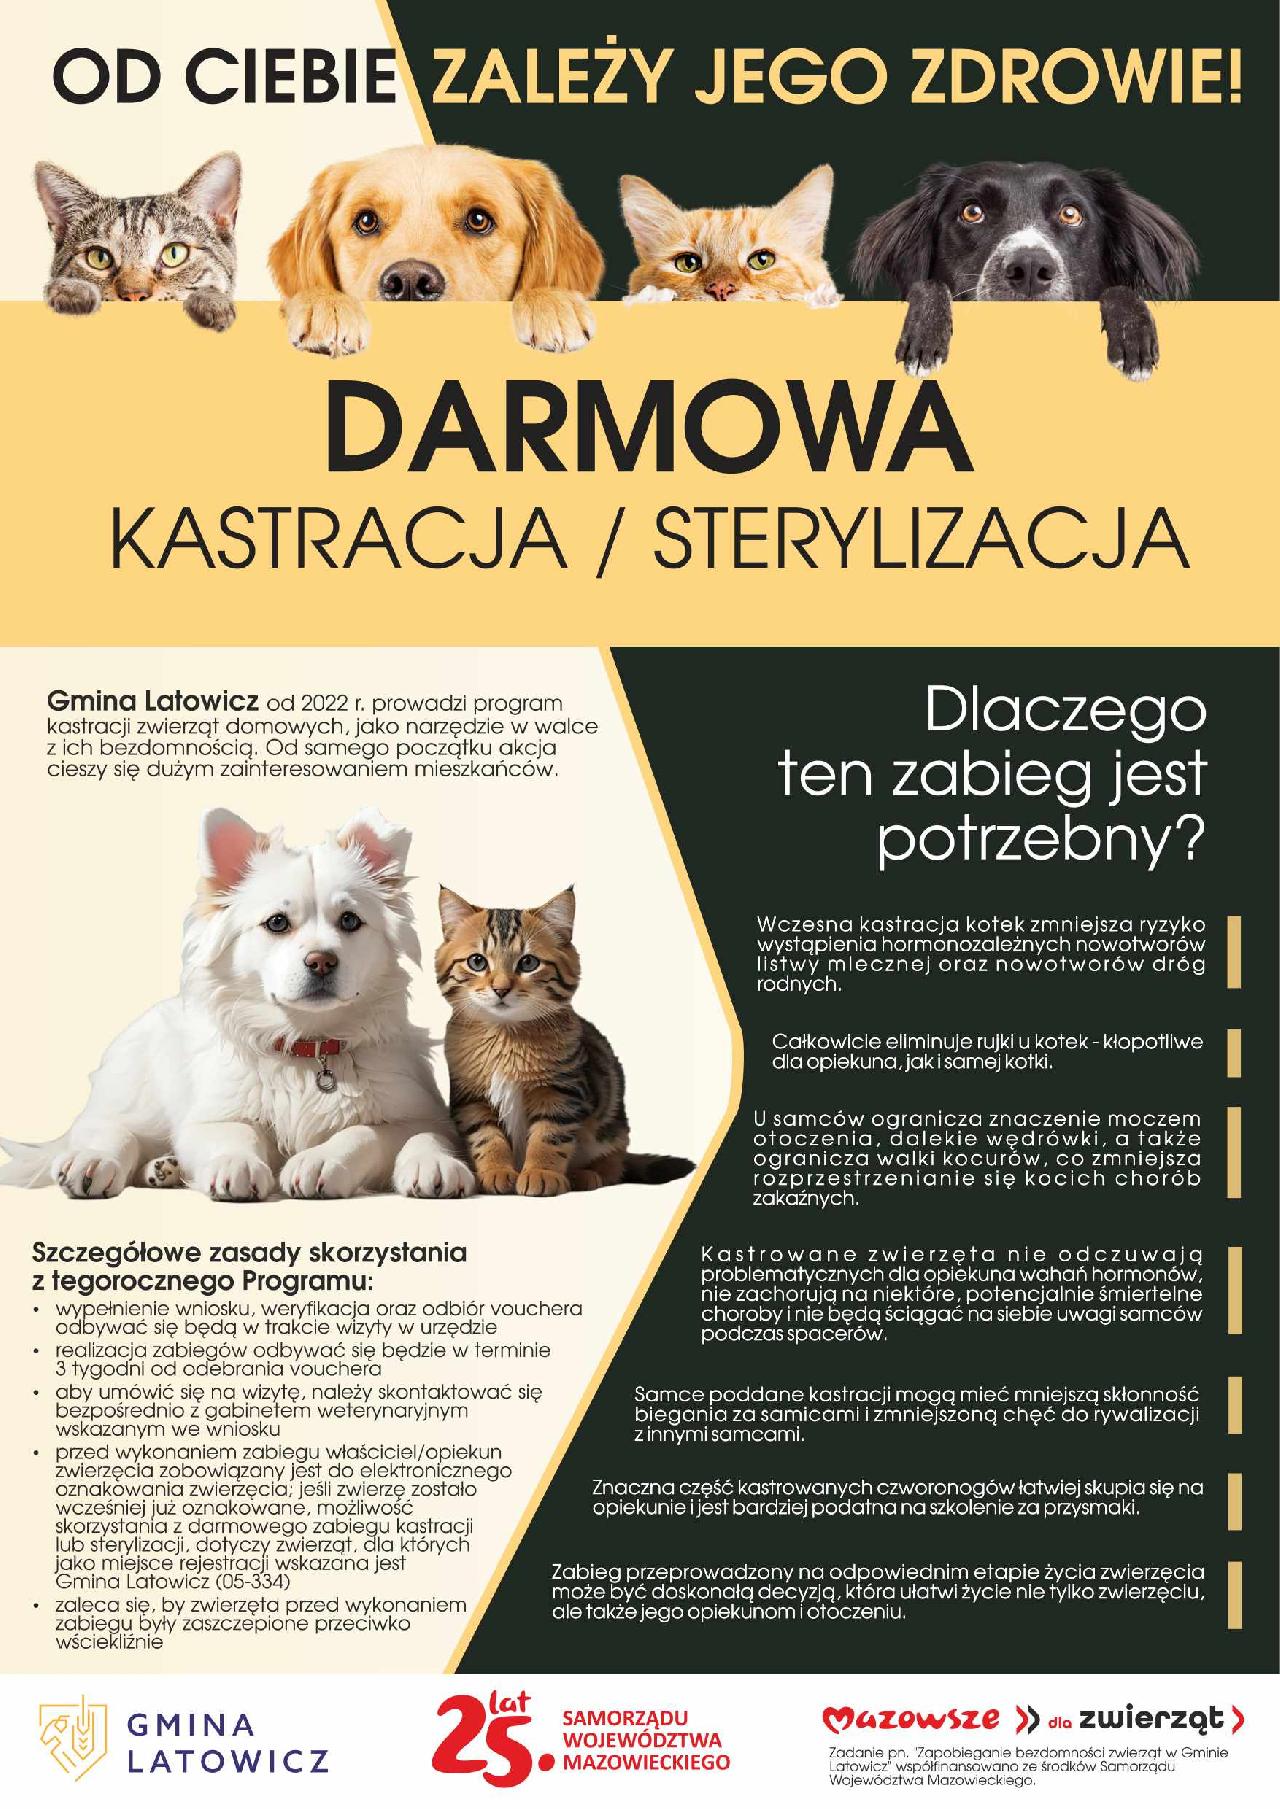 sterylizacja/kastracja darmowa w gminie Latowicz - plakat informujący